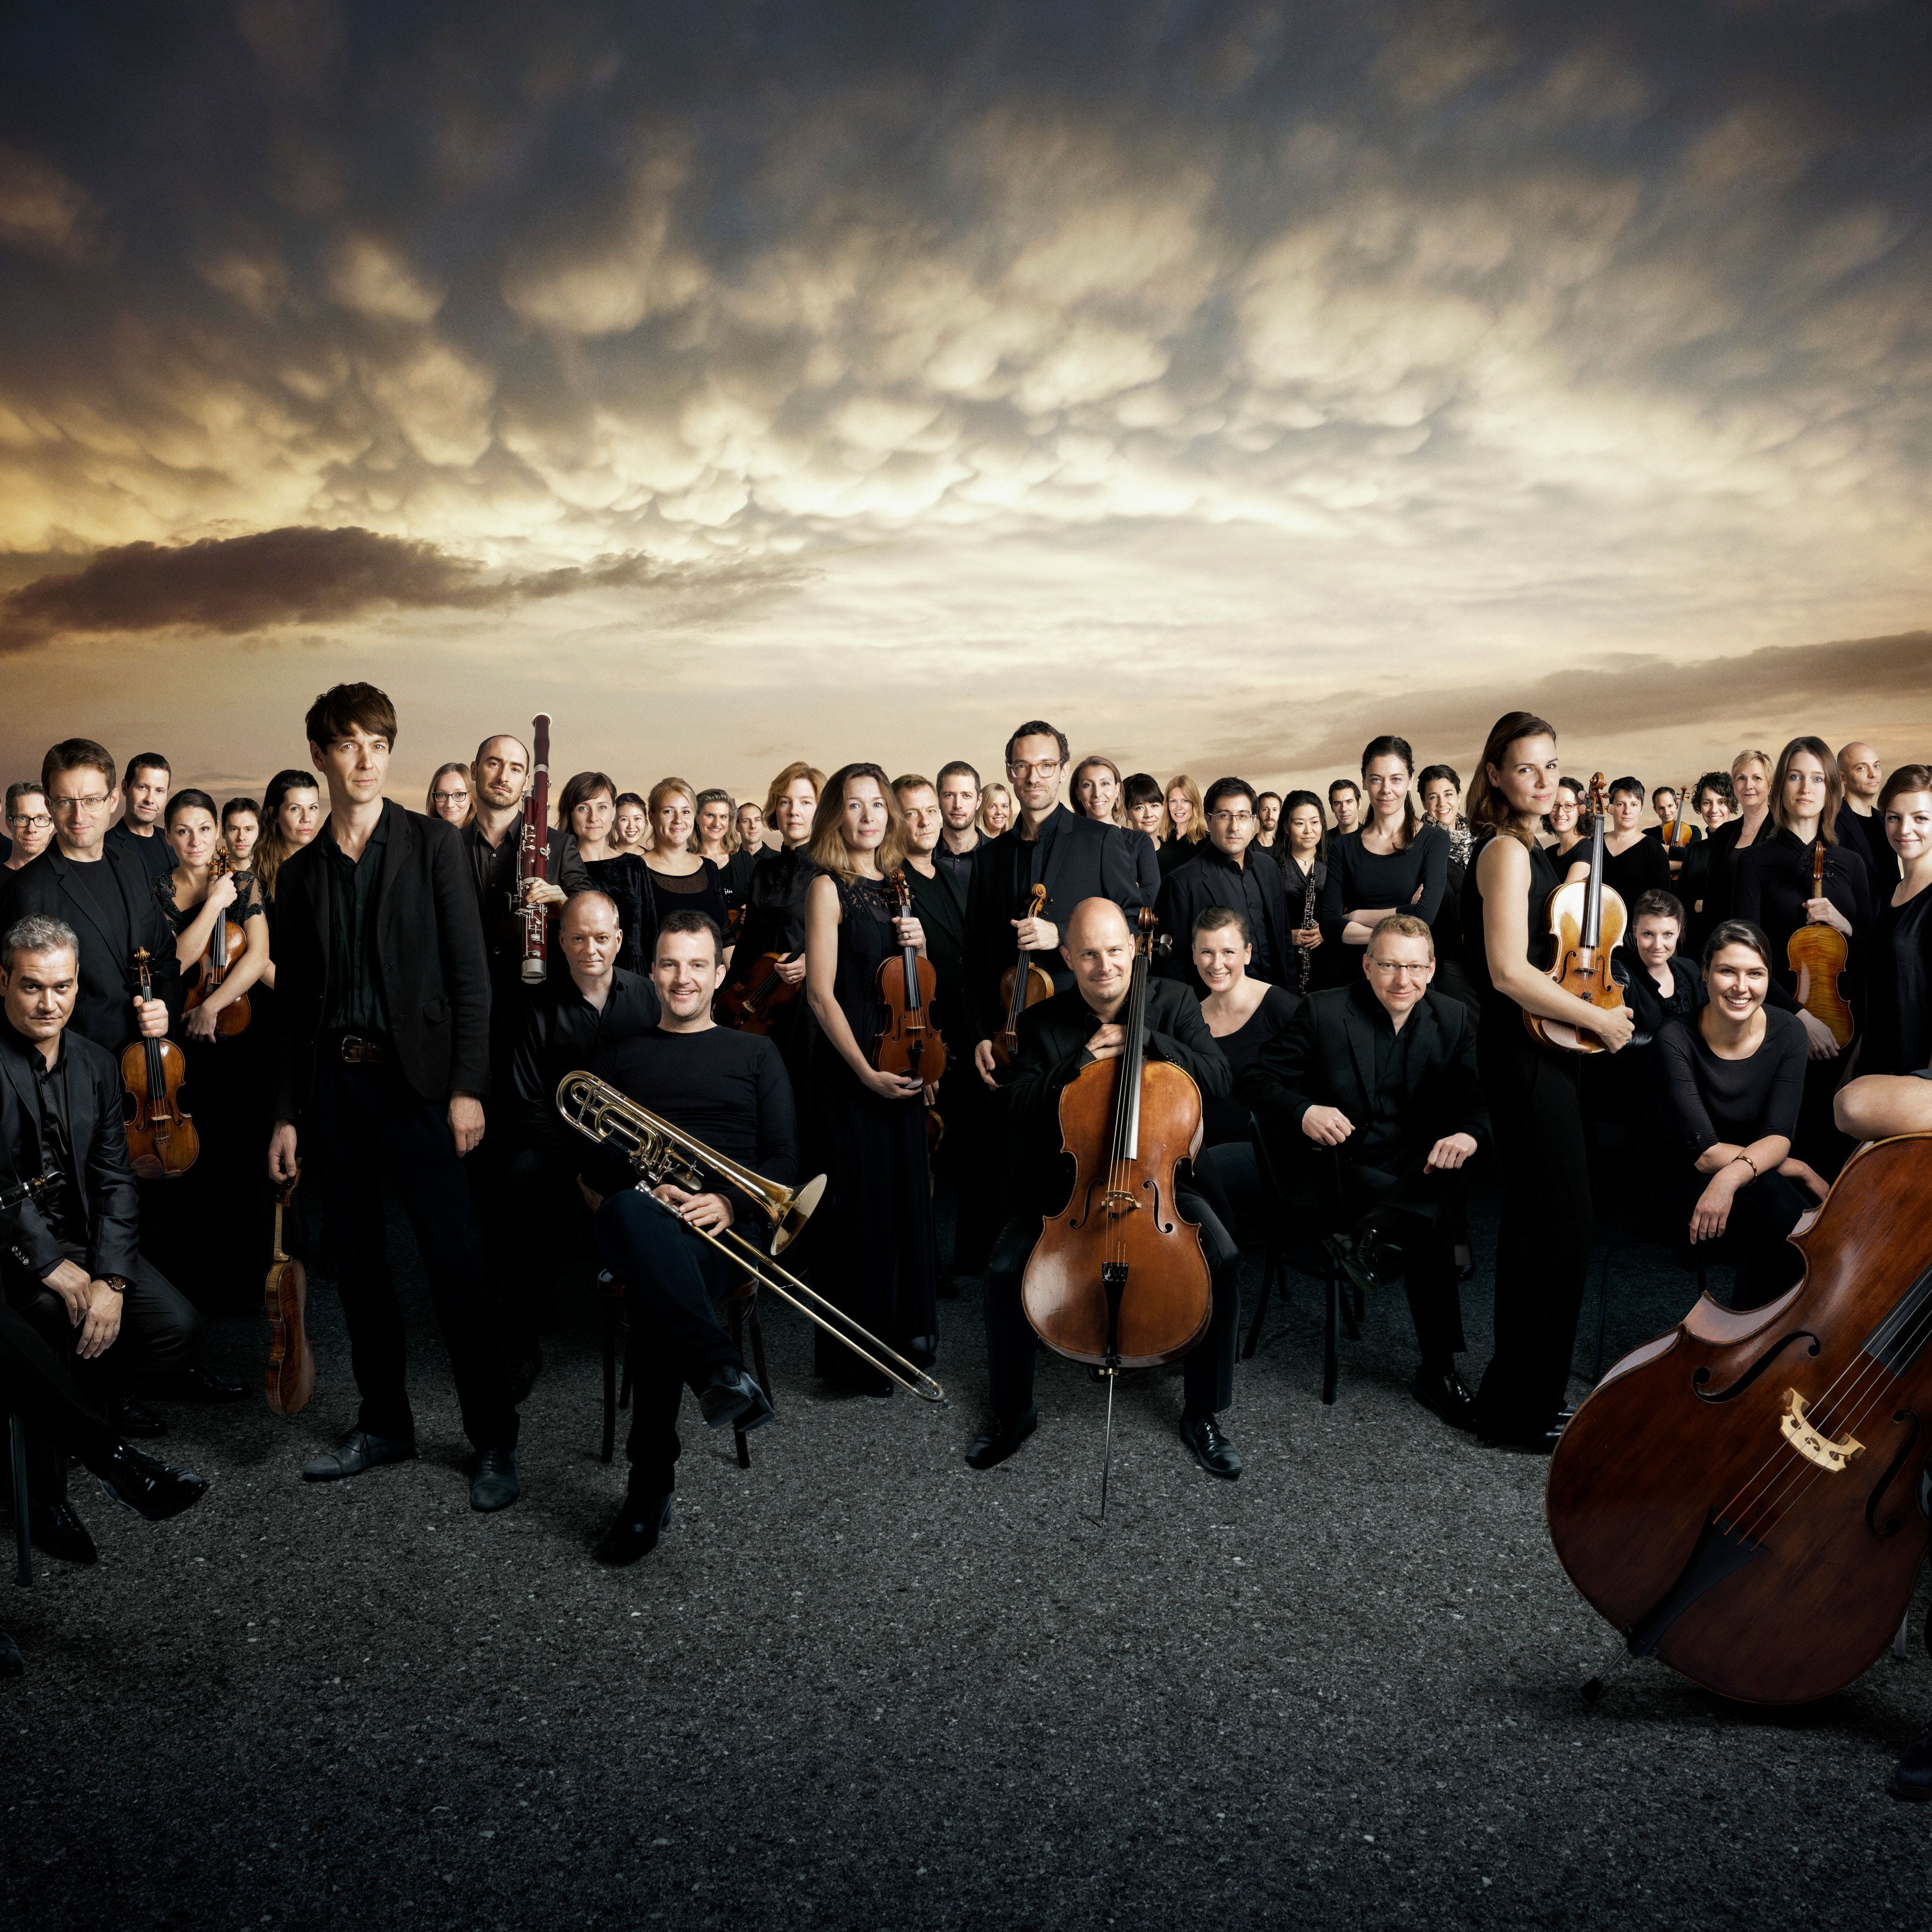 Gruppenbild des Orchesters vor dramatischem Himmel